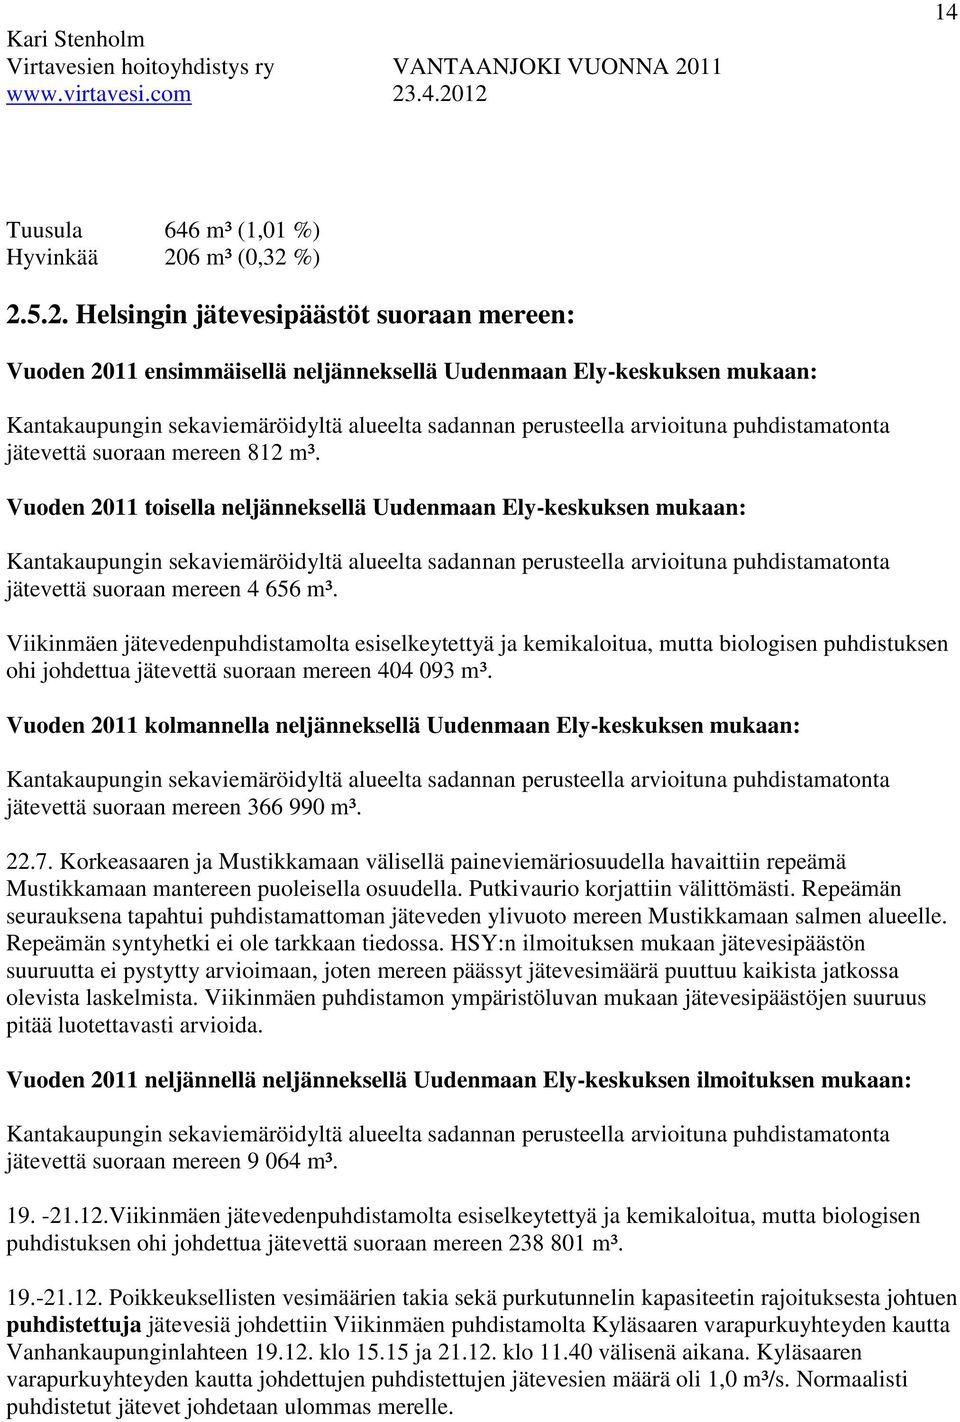 %) 2.5.2. Helsingin jätevesipäästöt suoraan mereen: Vuoden 2011 ensimmäisellä neljänneksellä Uudenmaan Ely-keskuksen mukaan: Kantakaupungin sekaviemäröidyltä alueelta sadannan perusteella arvioituna